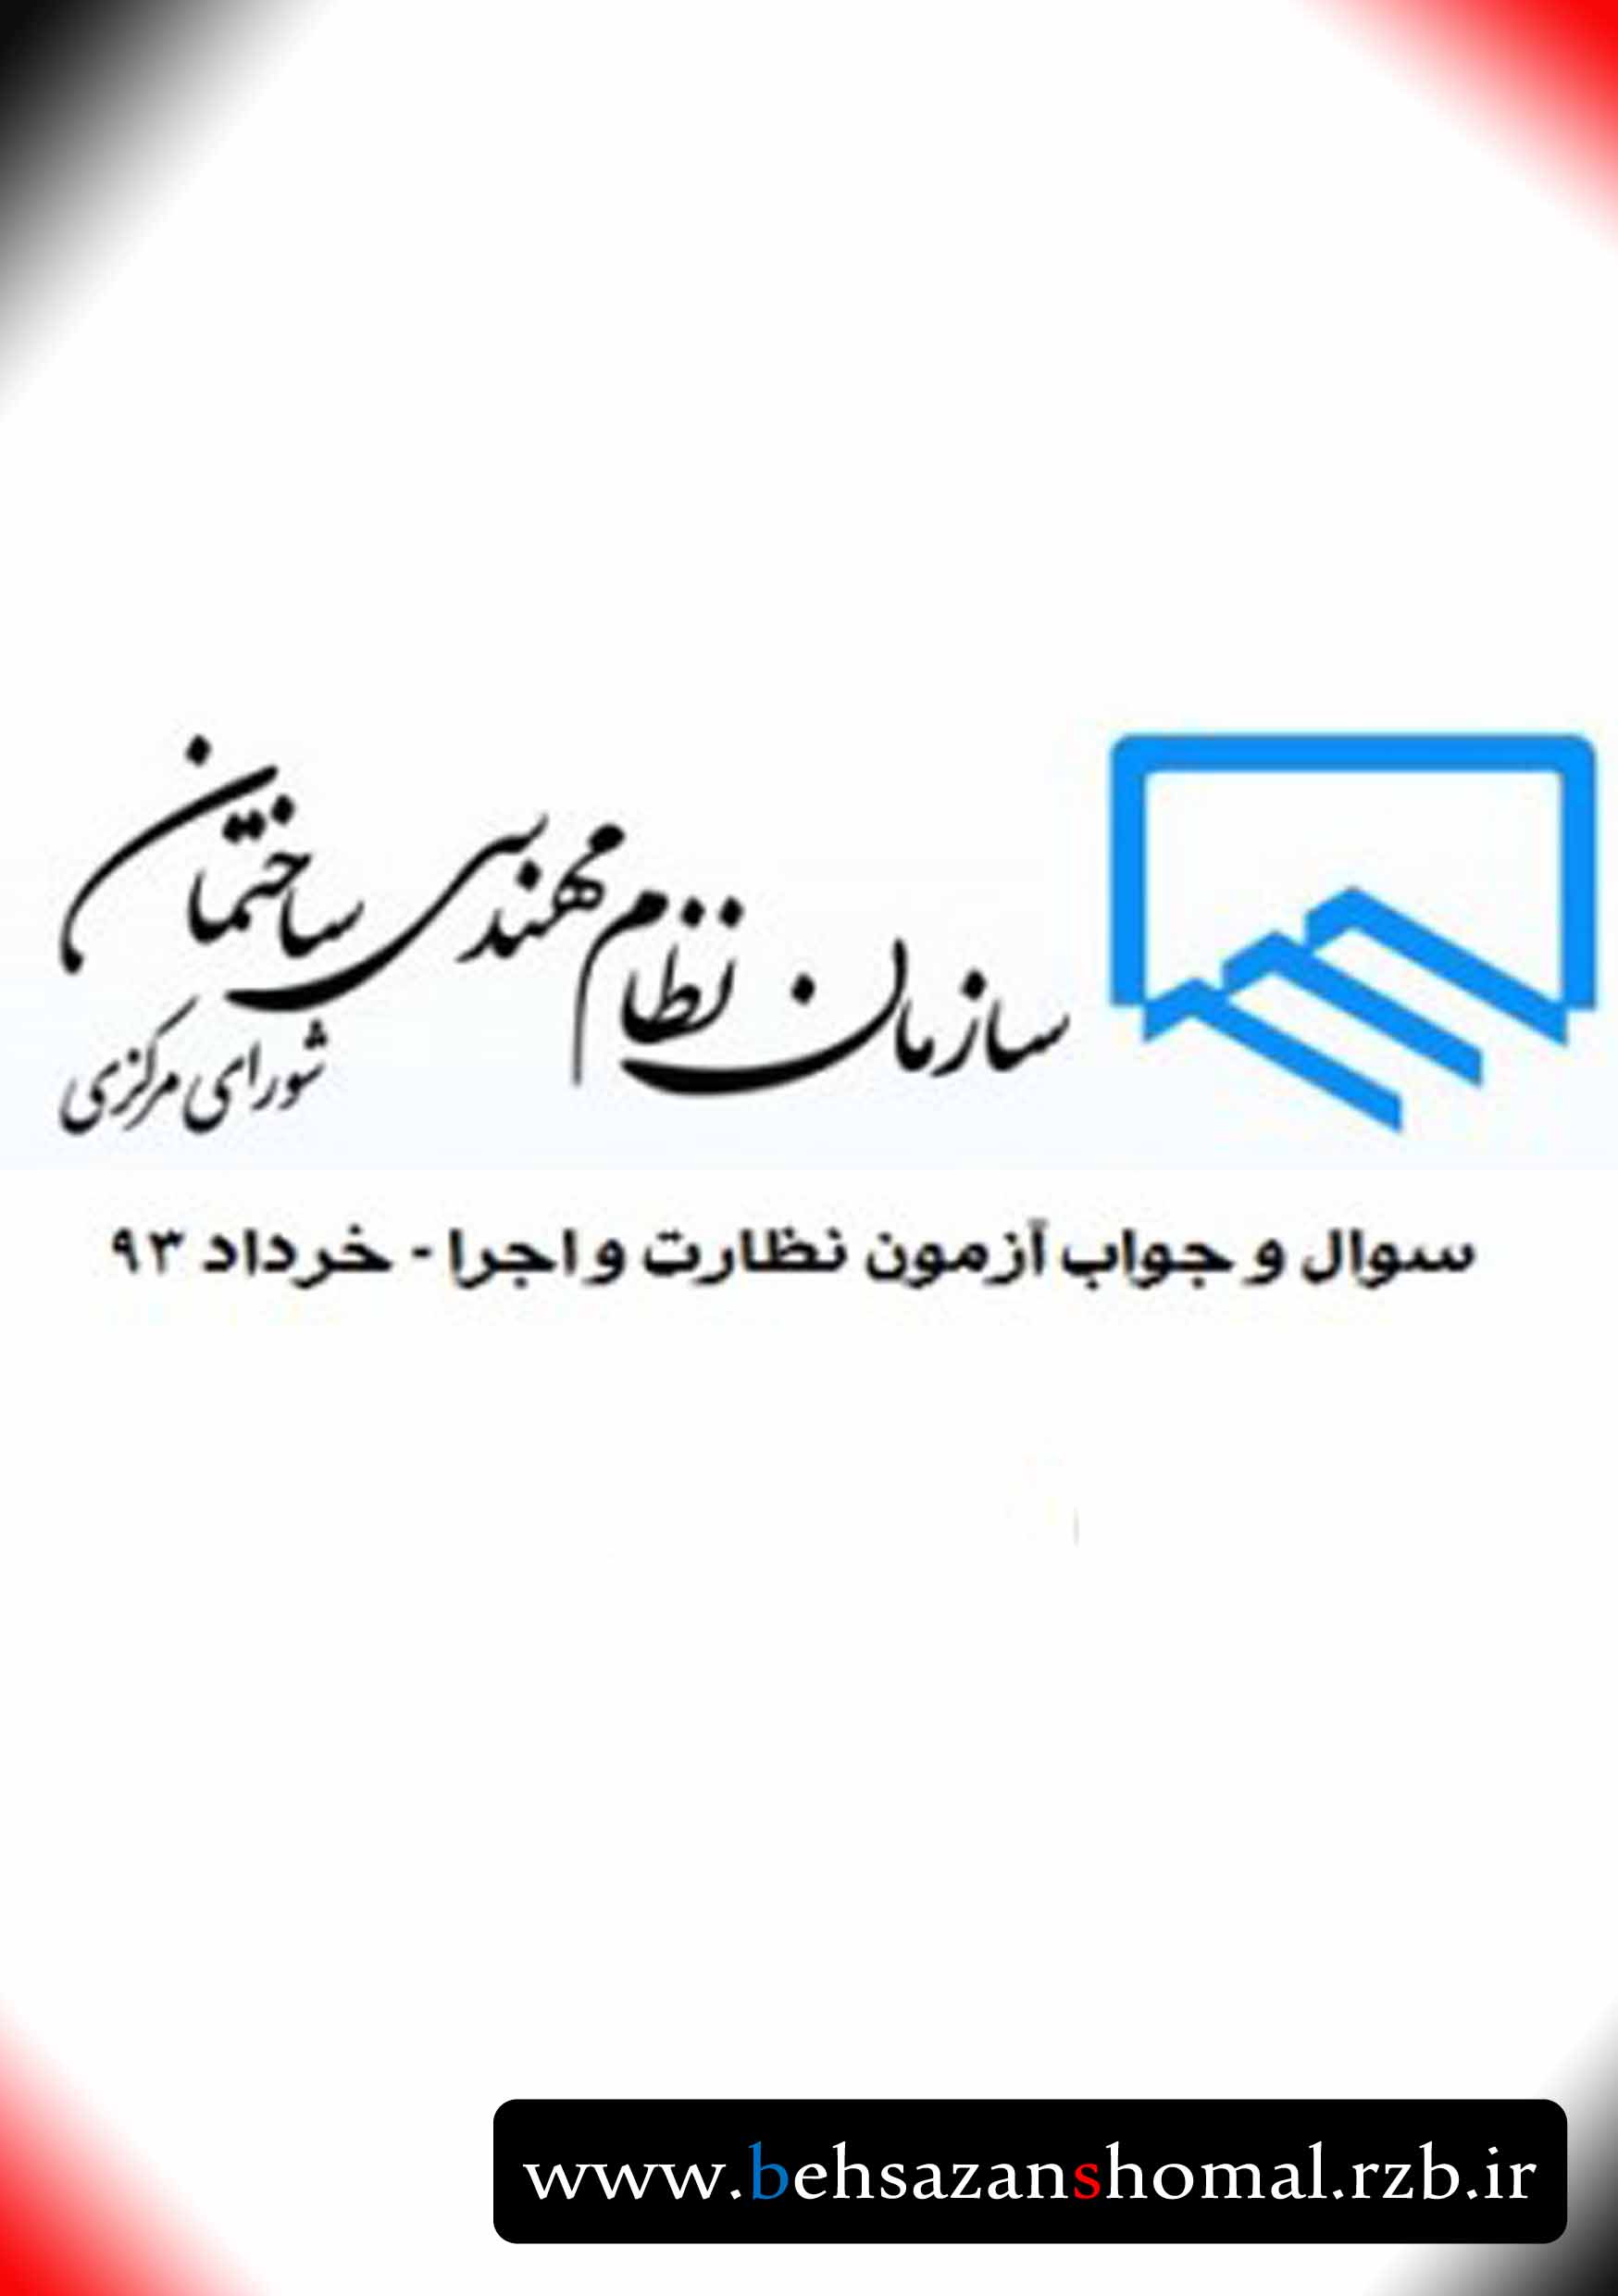 دانلود سوالات و پاسخ آزمون نظارت و اجرا نظام مهندسی خرداد۹۳ 